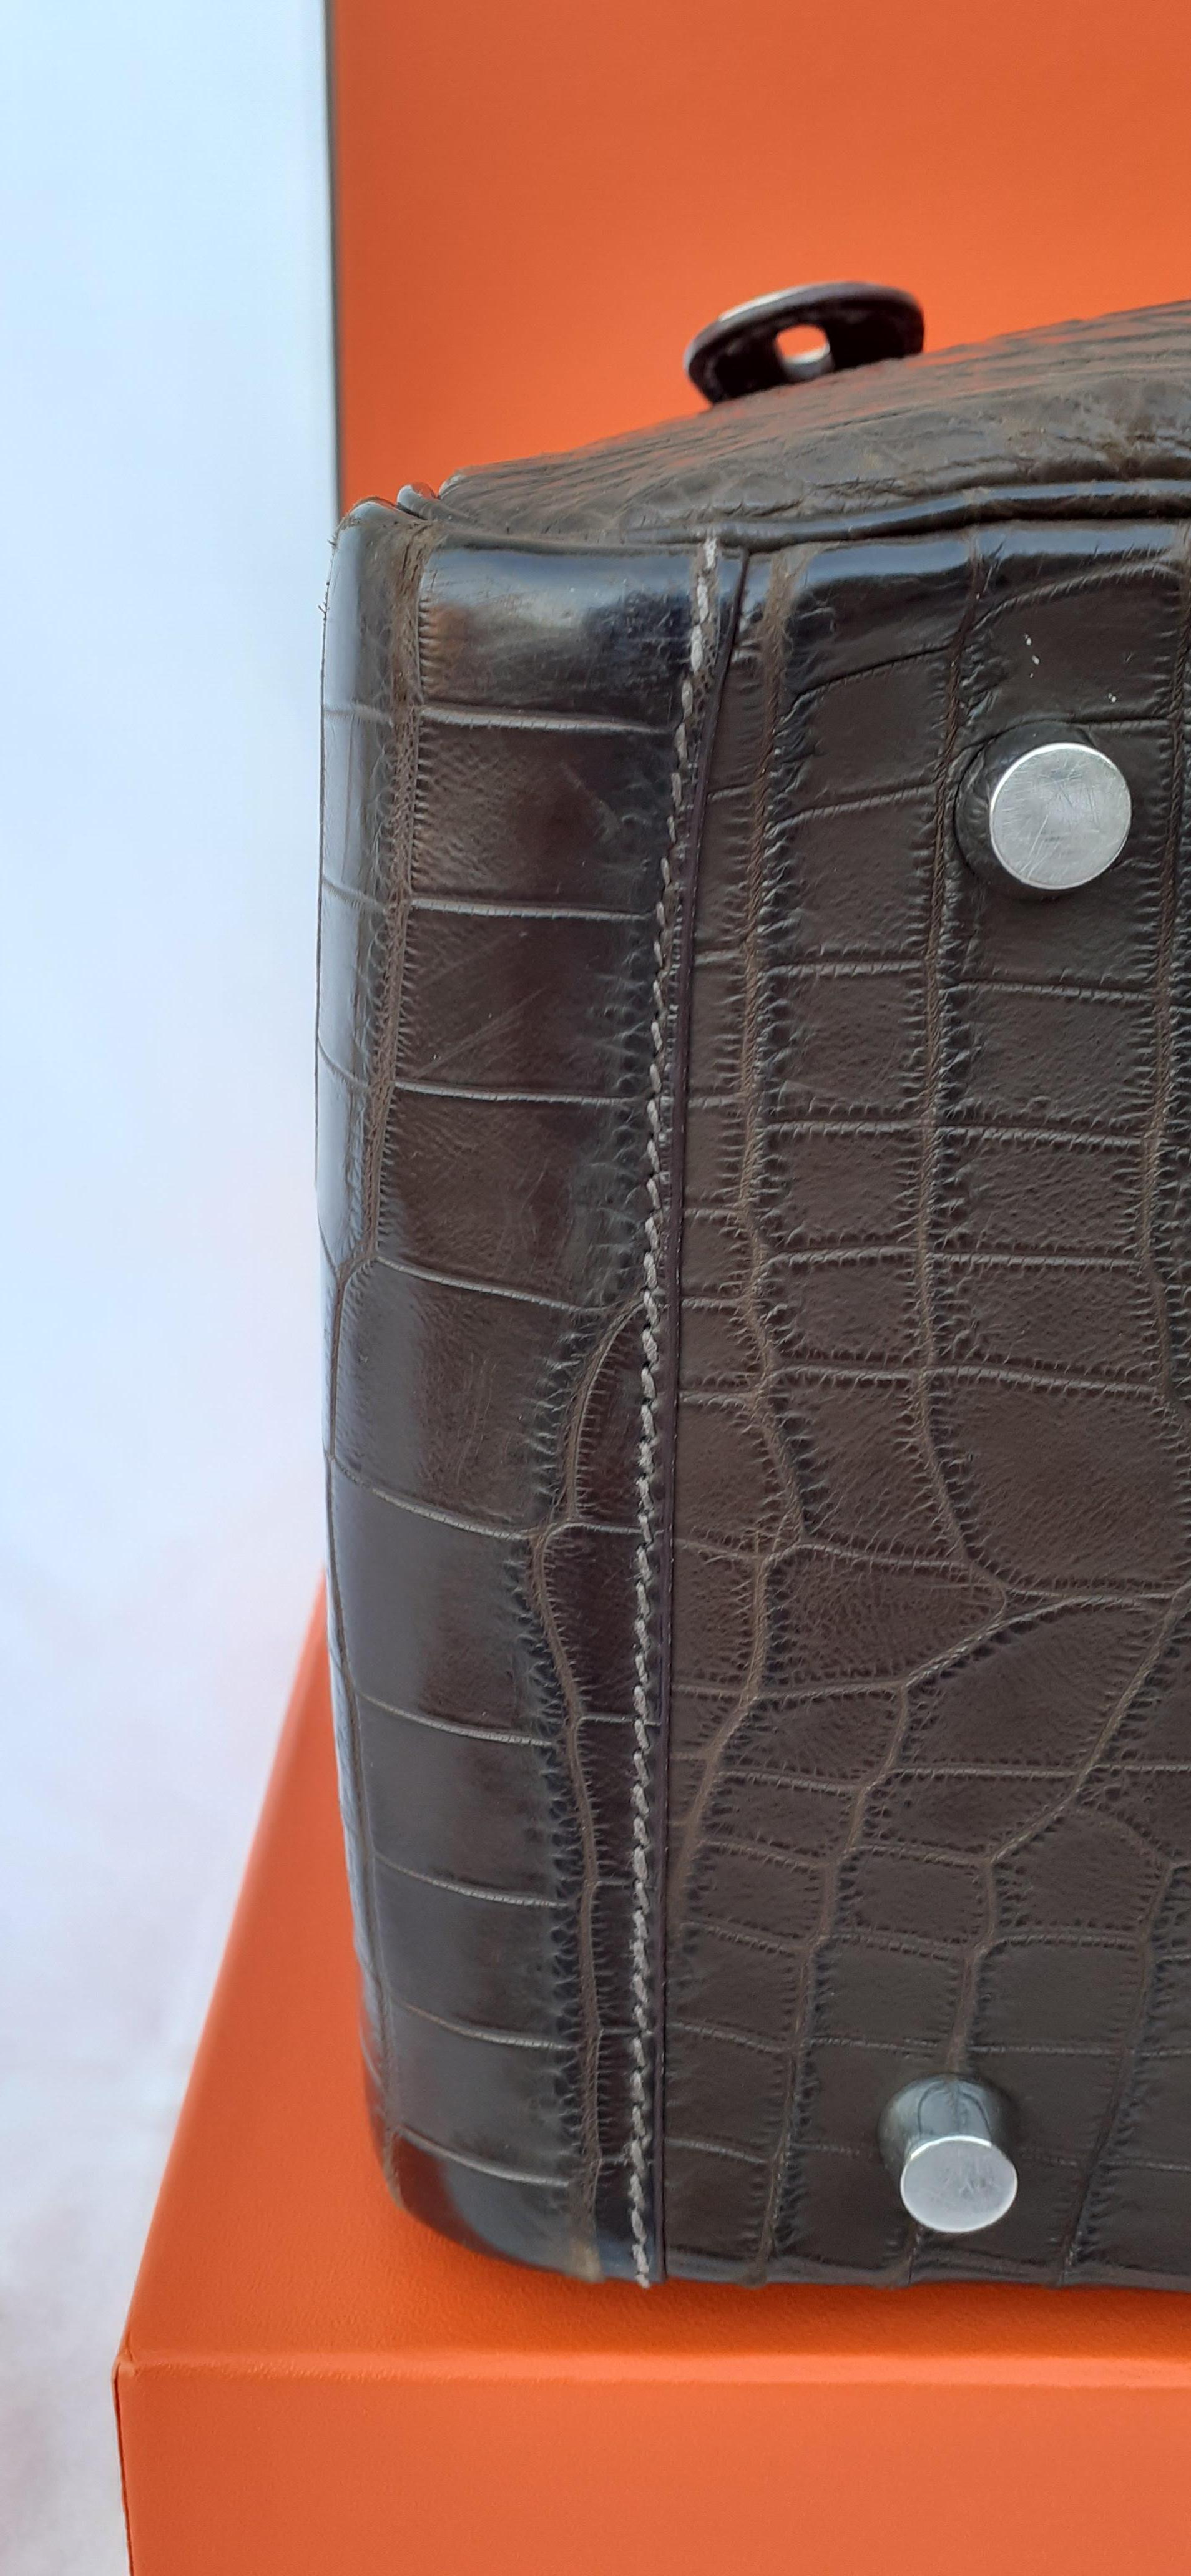 Exceptional Hermès Lindy Hand Bag Mat Gris Elephant Crocodile Phw 30 cm 9